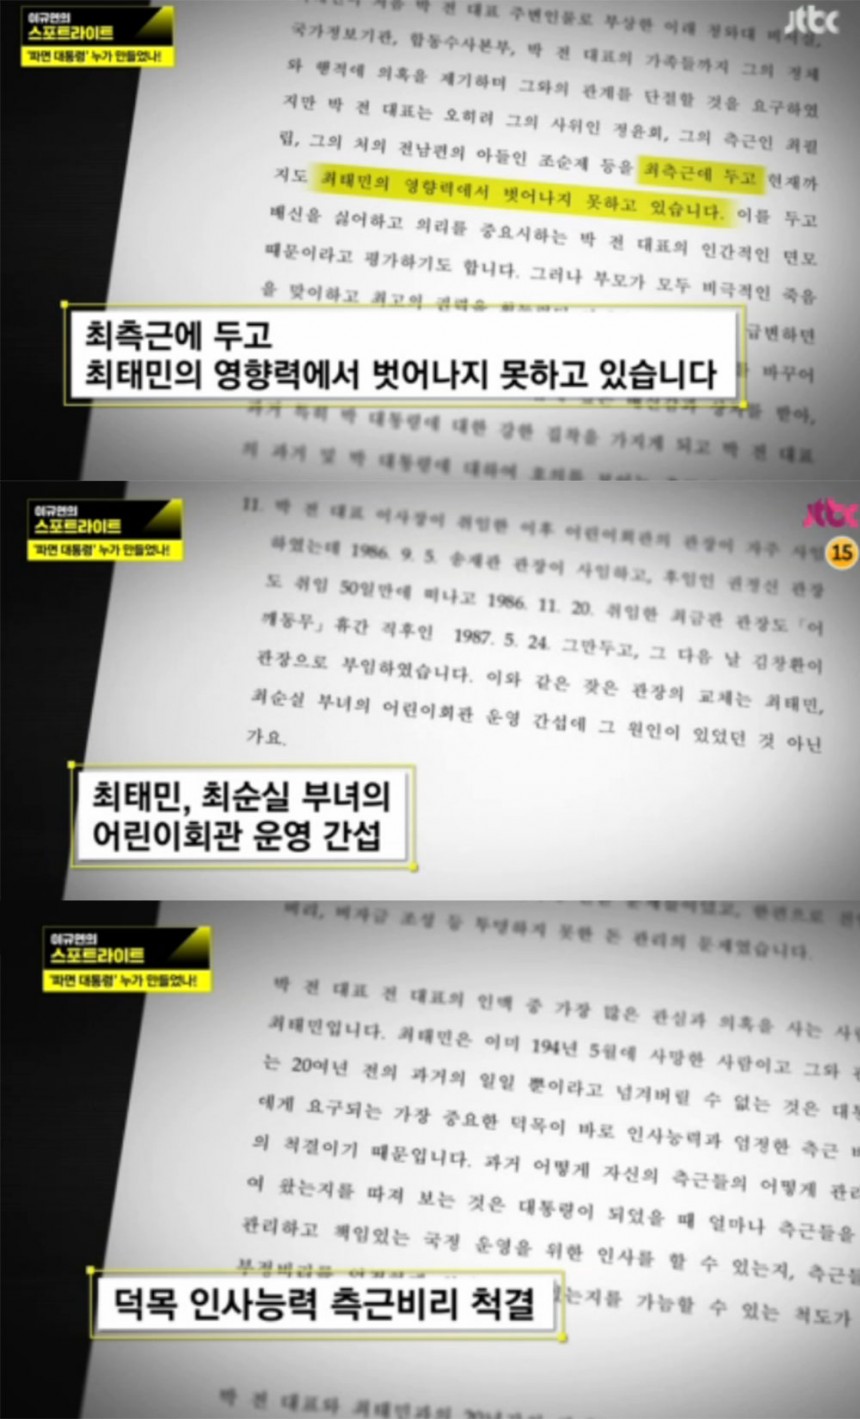 이규연의 스포트라이트’ 방송 화면 / JTBC 이규연의 스포트라이트’ 방송 캡처